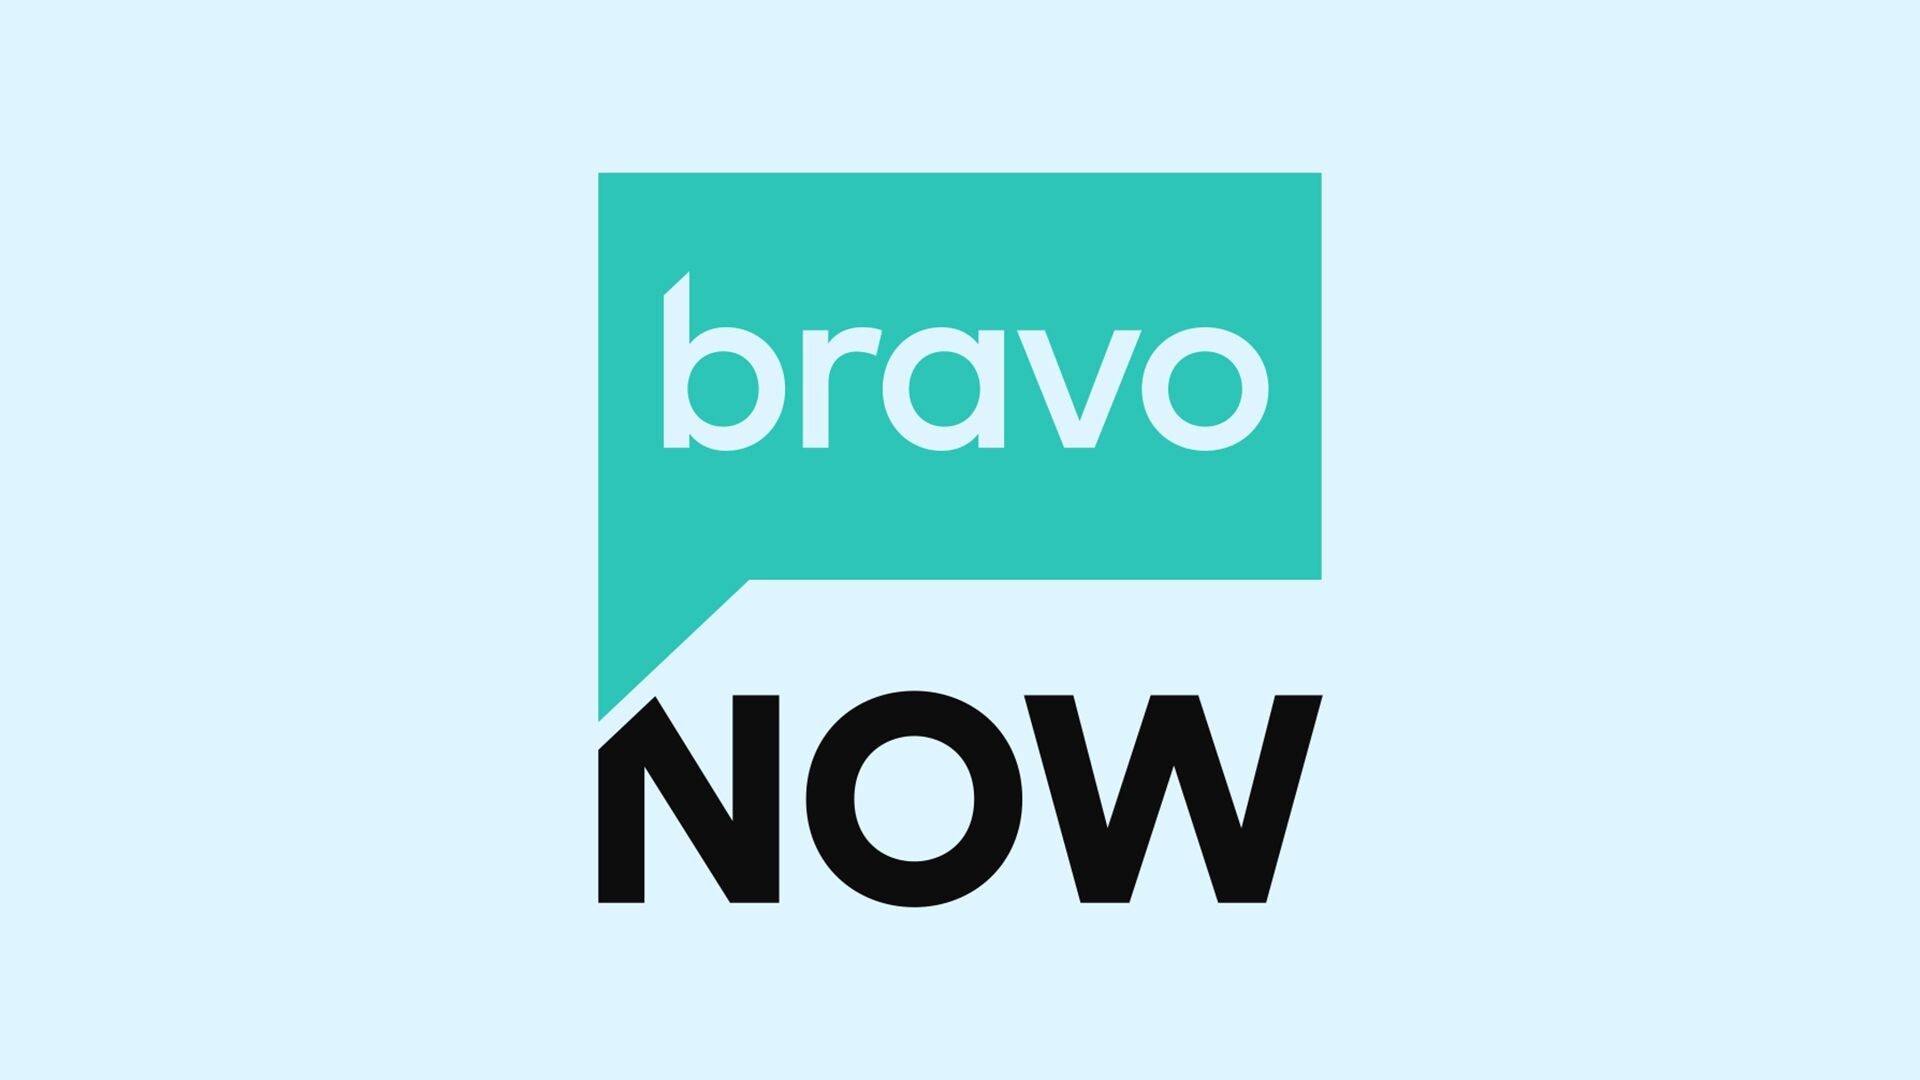 Bravo roku channel